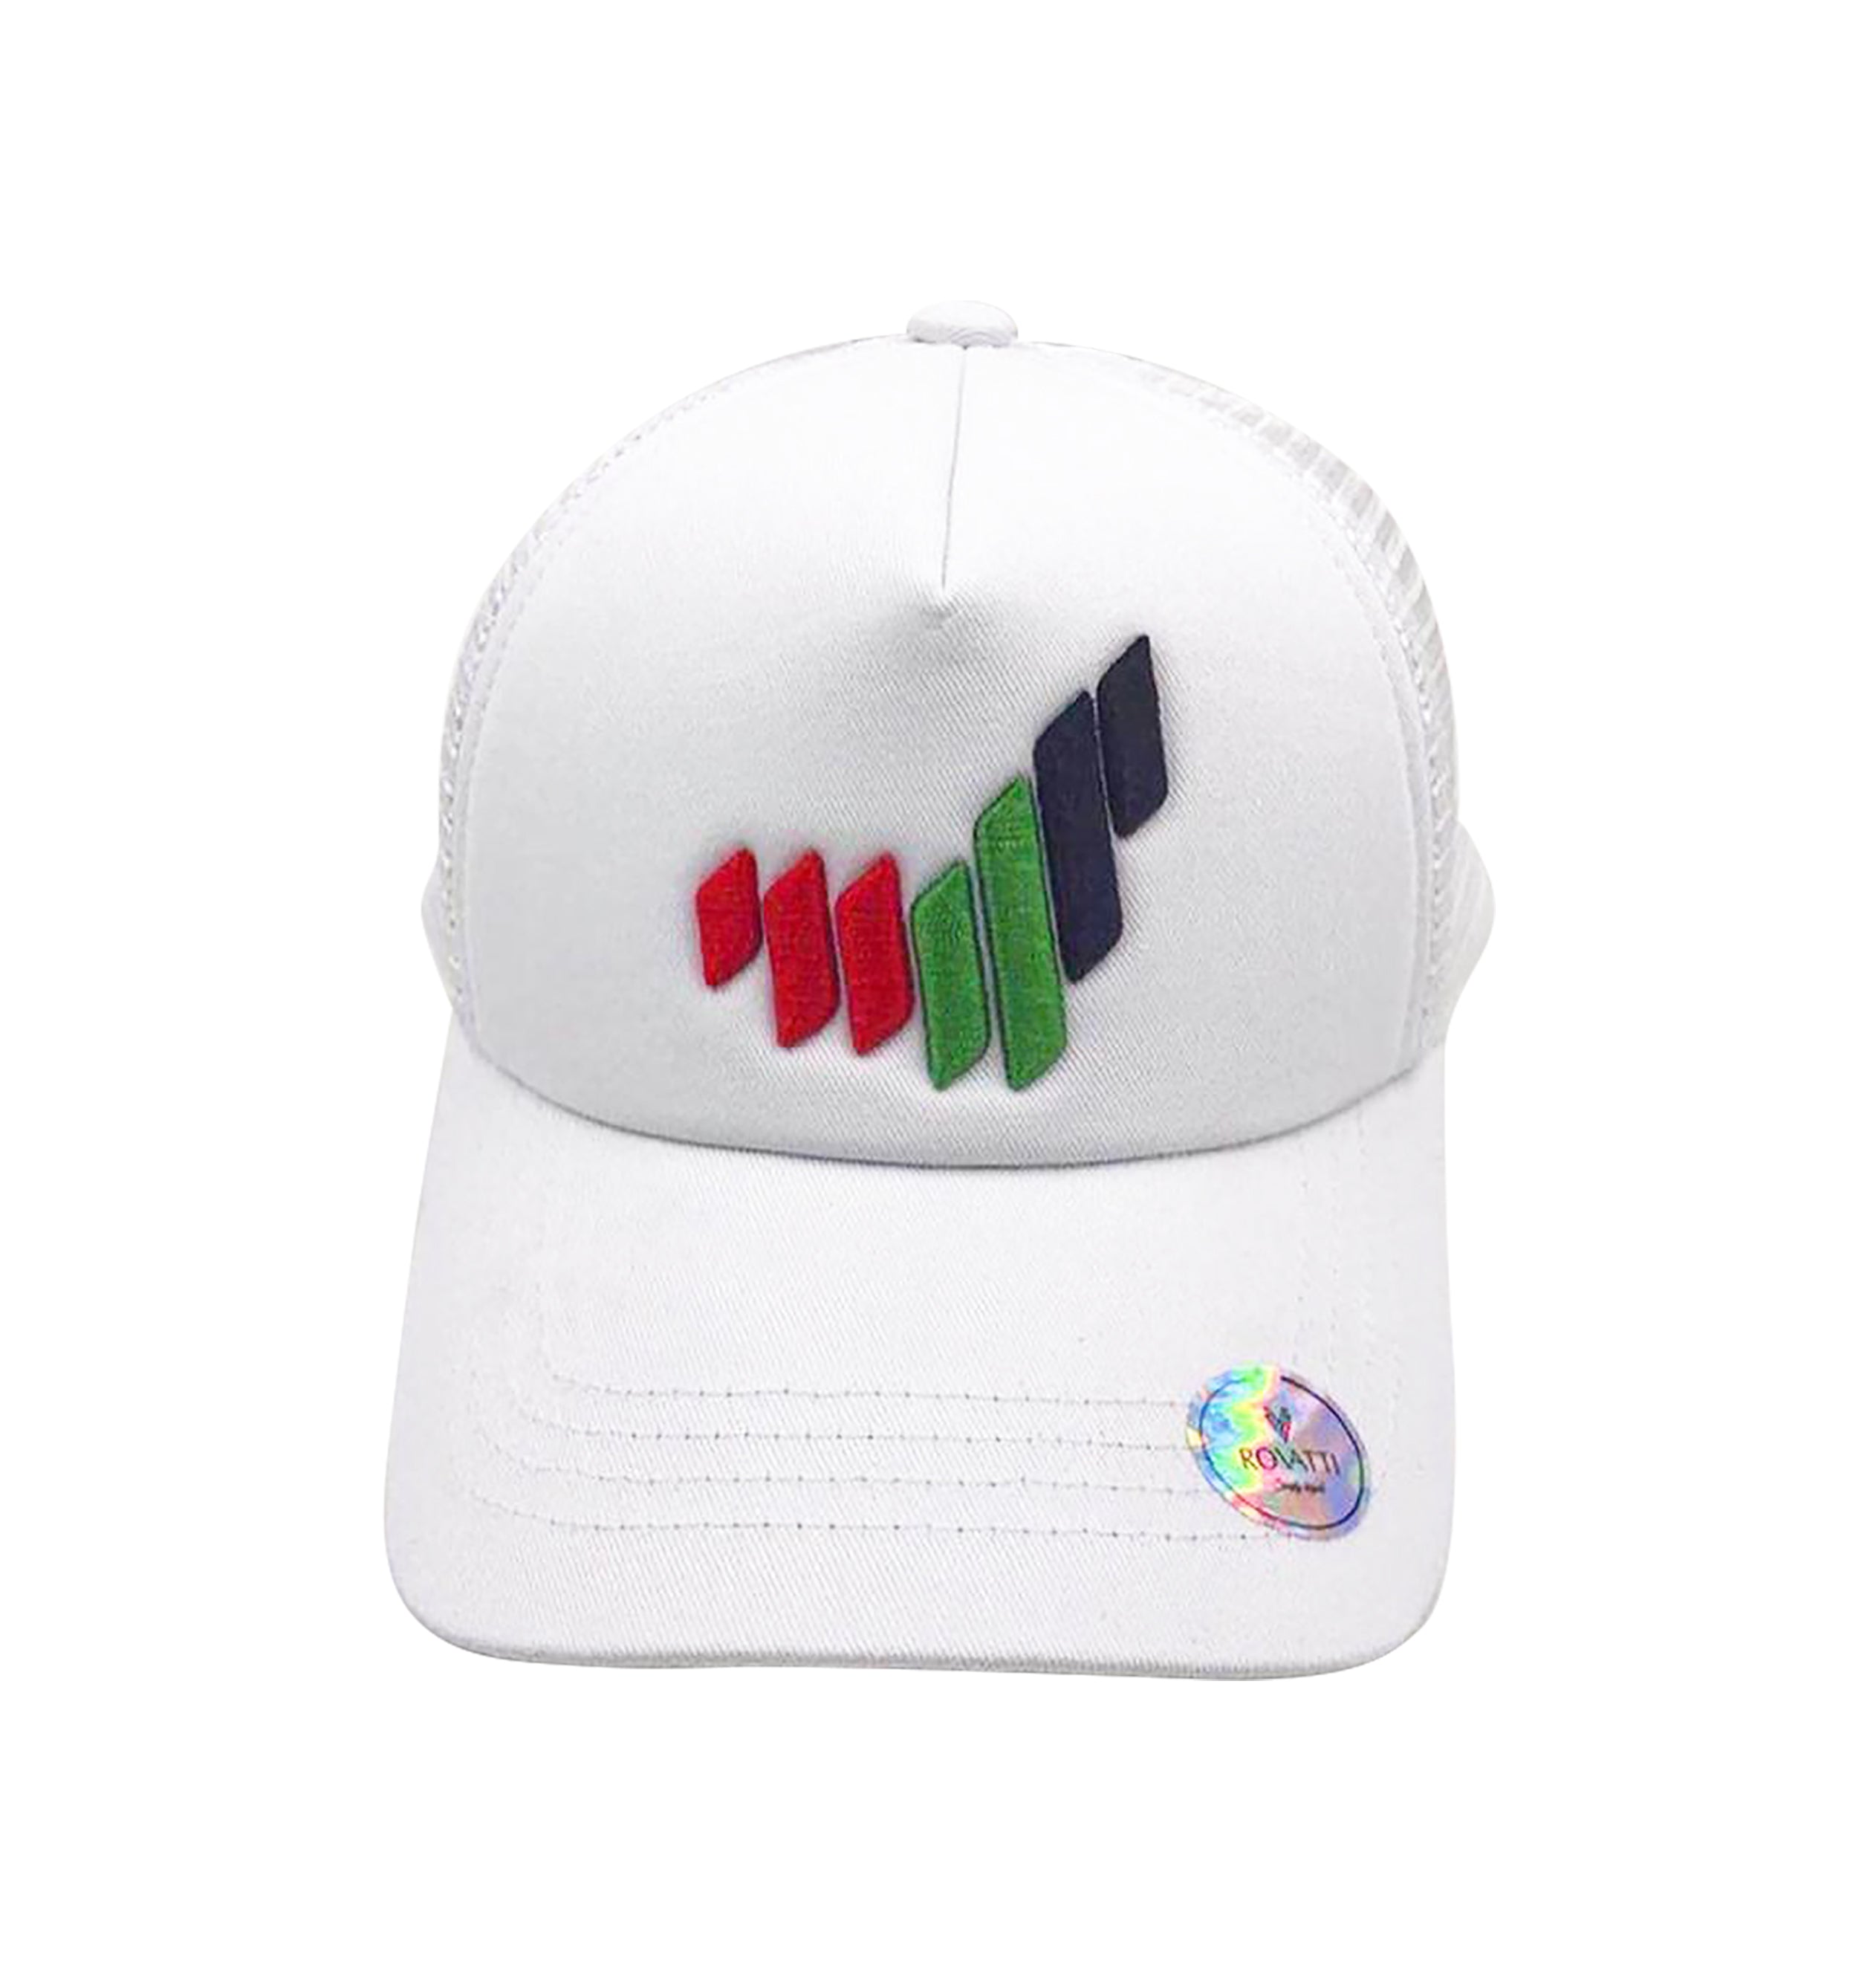 UAE New Logo Cap White | order caps online | best gifts for men & women